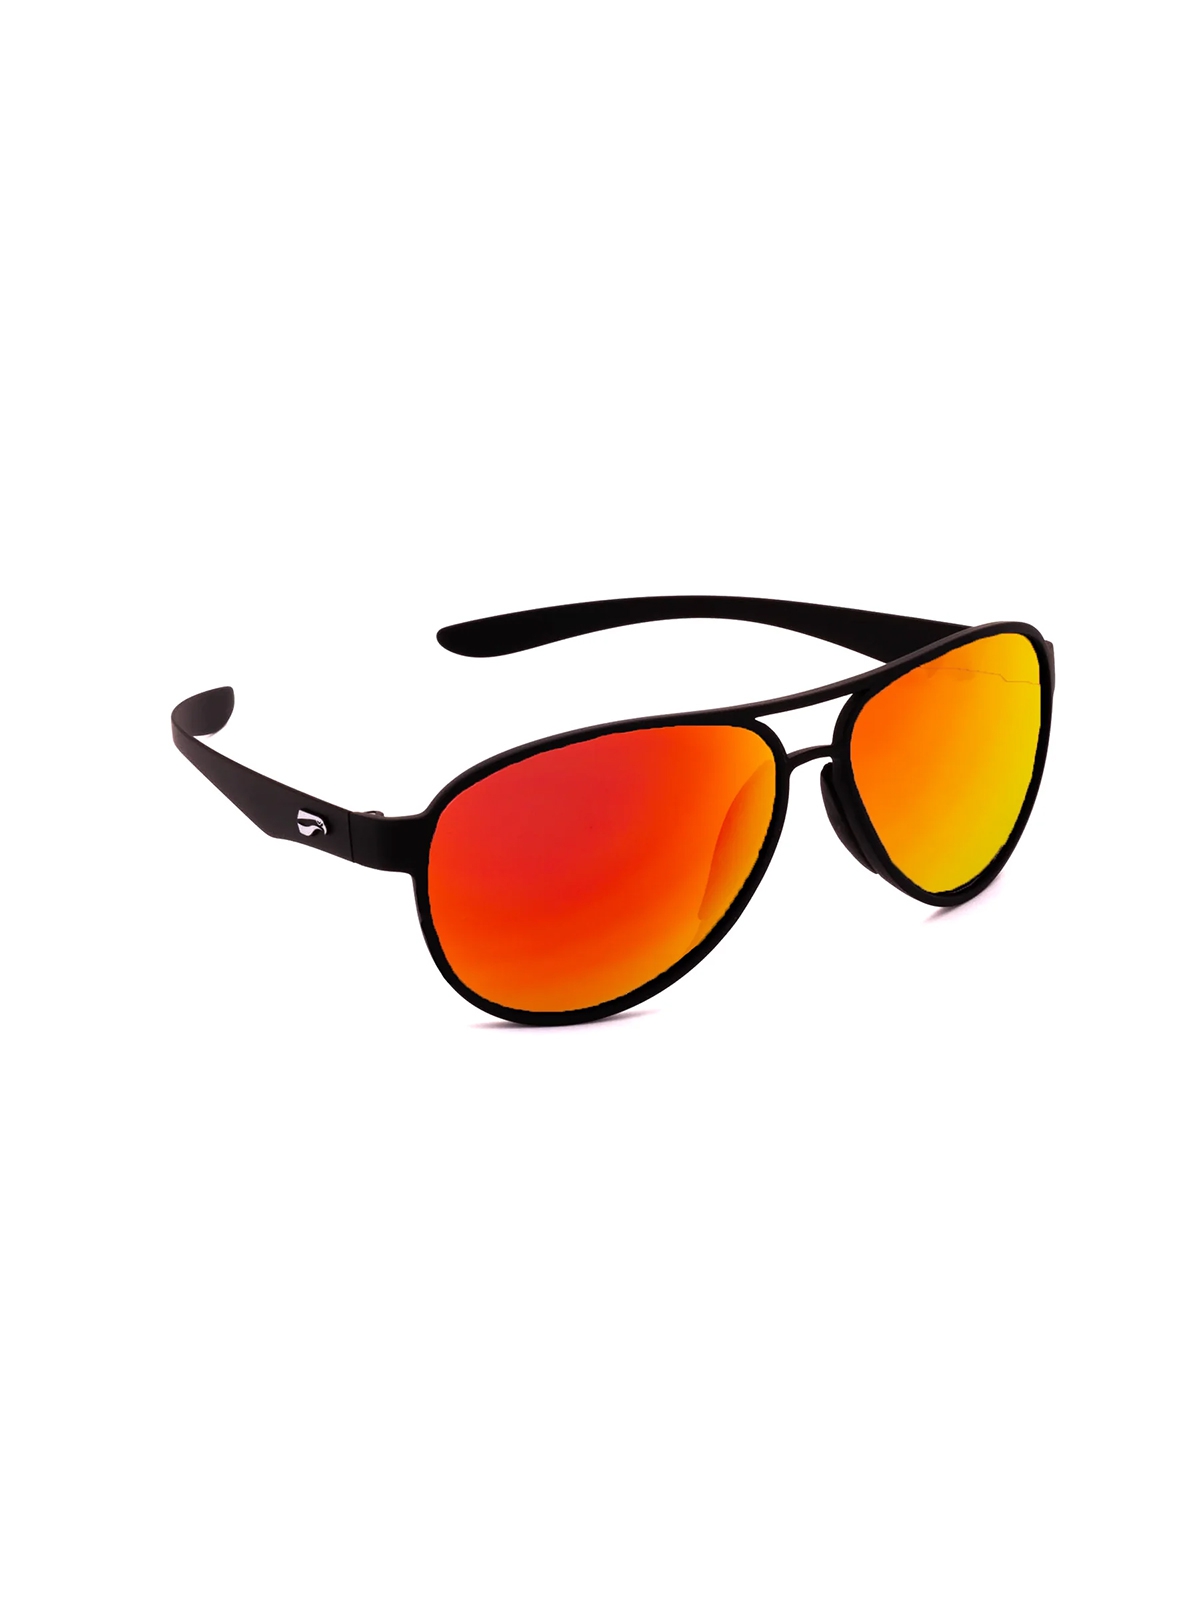 Flying Eyes Sunglasses Kestrel Aviator - Matte Black Frame, Mirrored Rose Lenses